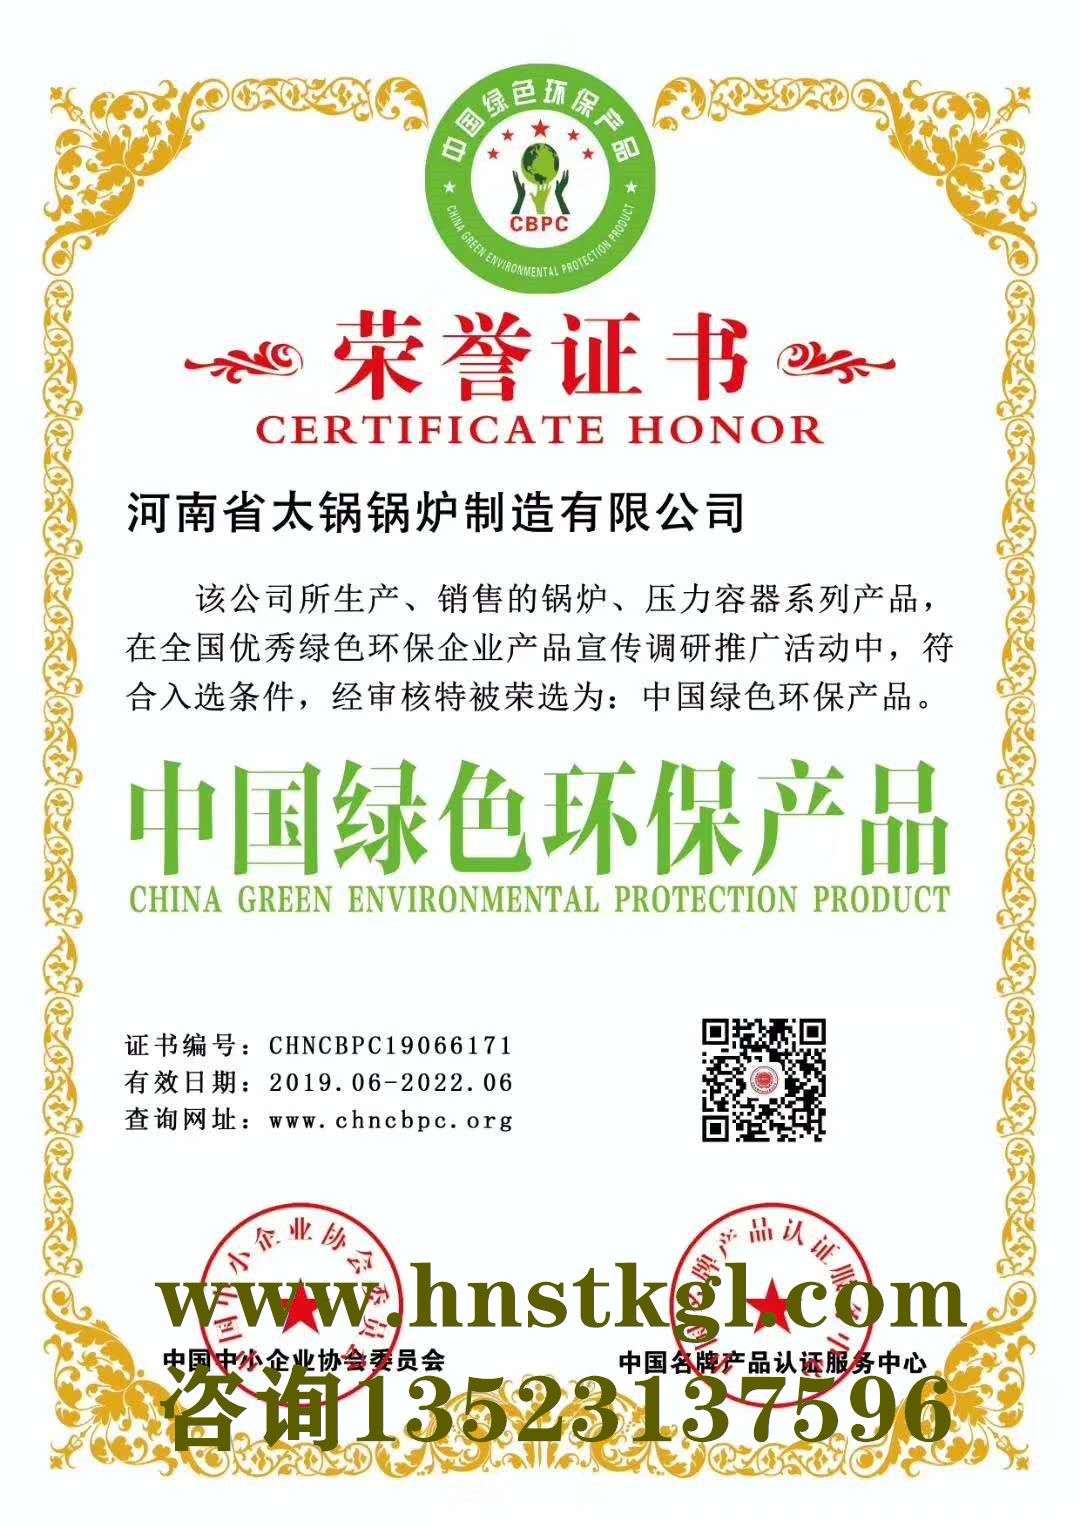 中(zhōng)國綠色環保産品榮譽證書(shū)